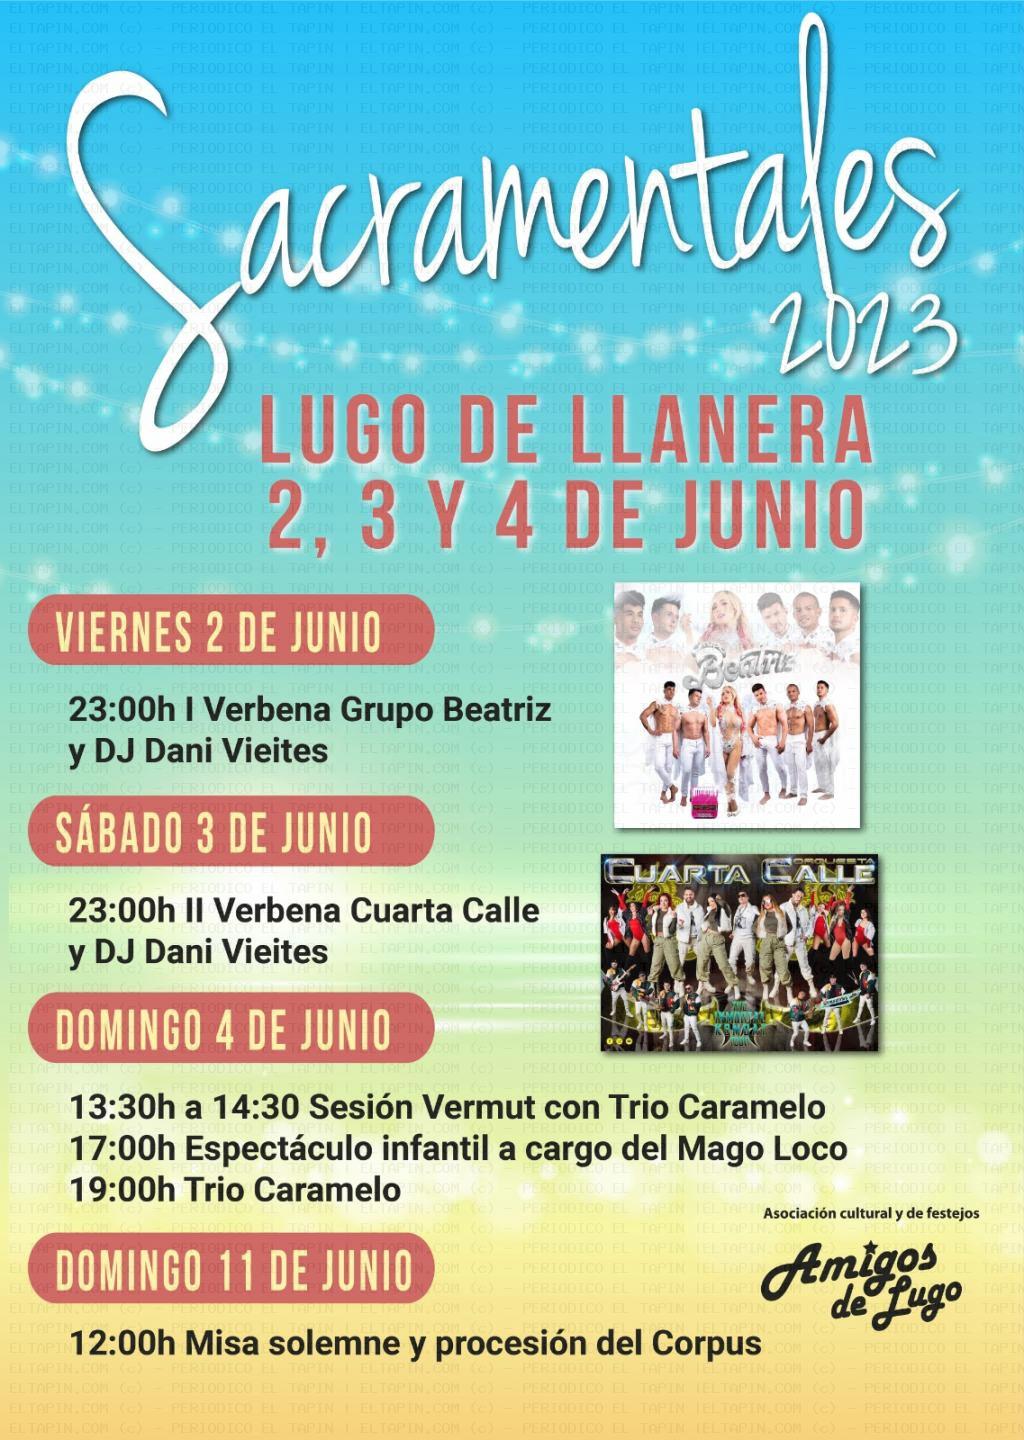 El Tapin - Lugo de Llanera celebra las Sacramentales del 2 al 4 de junio